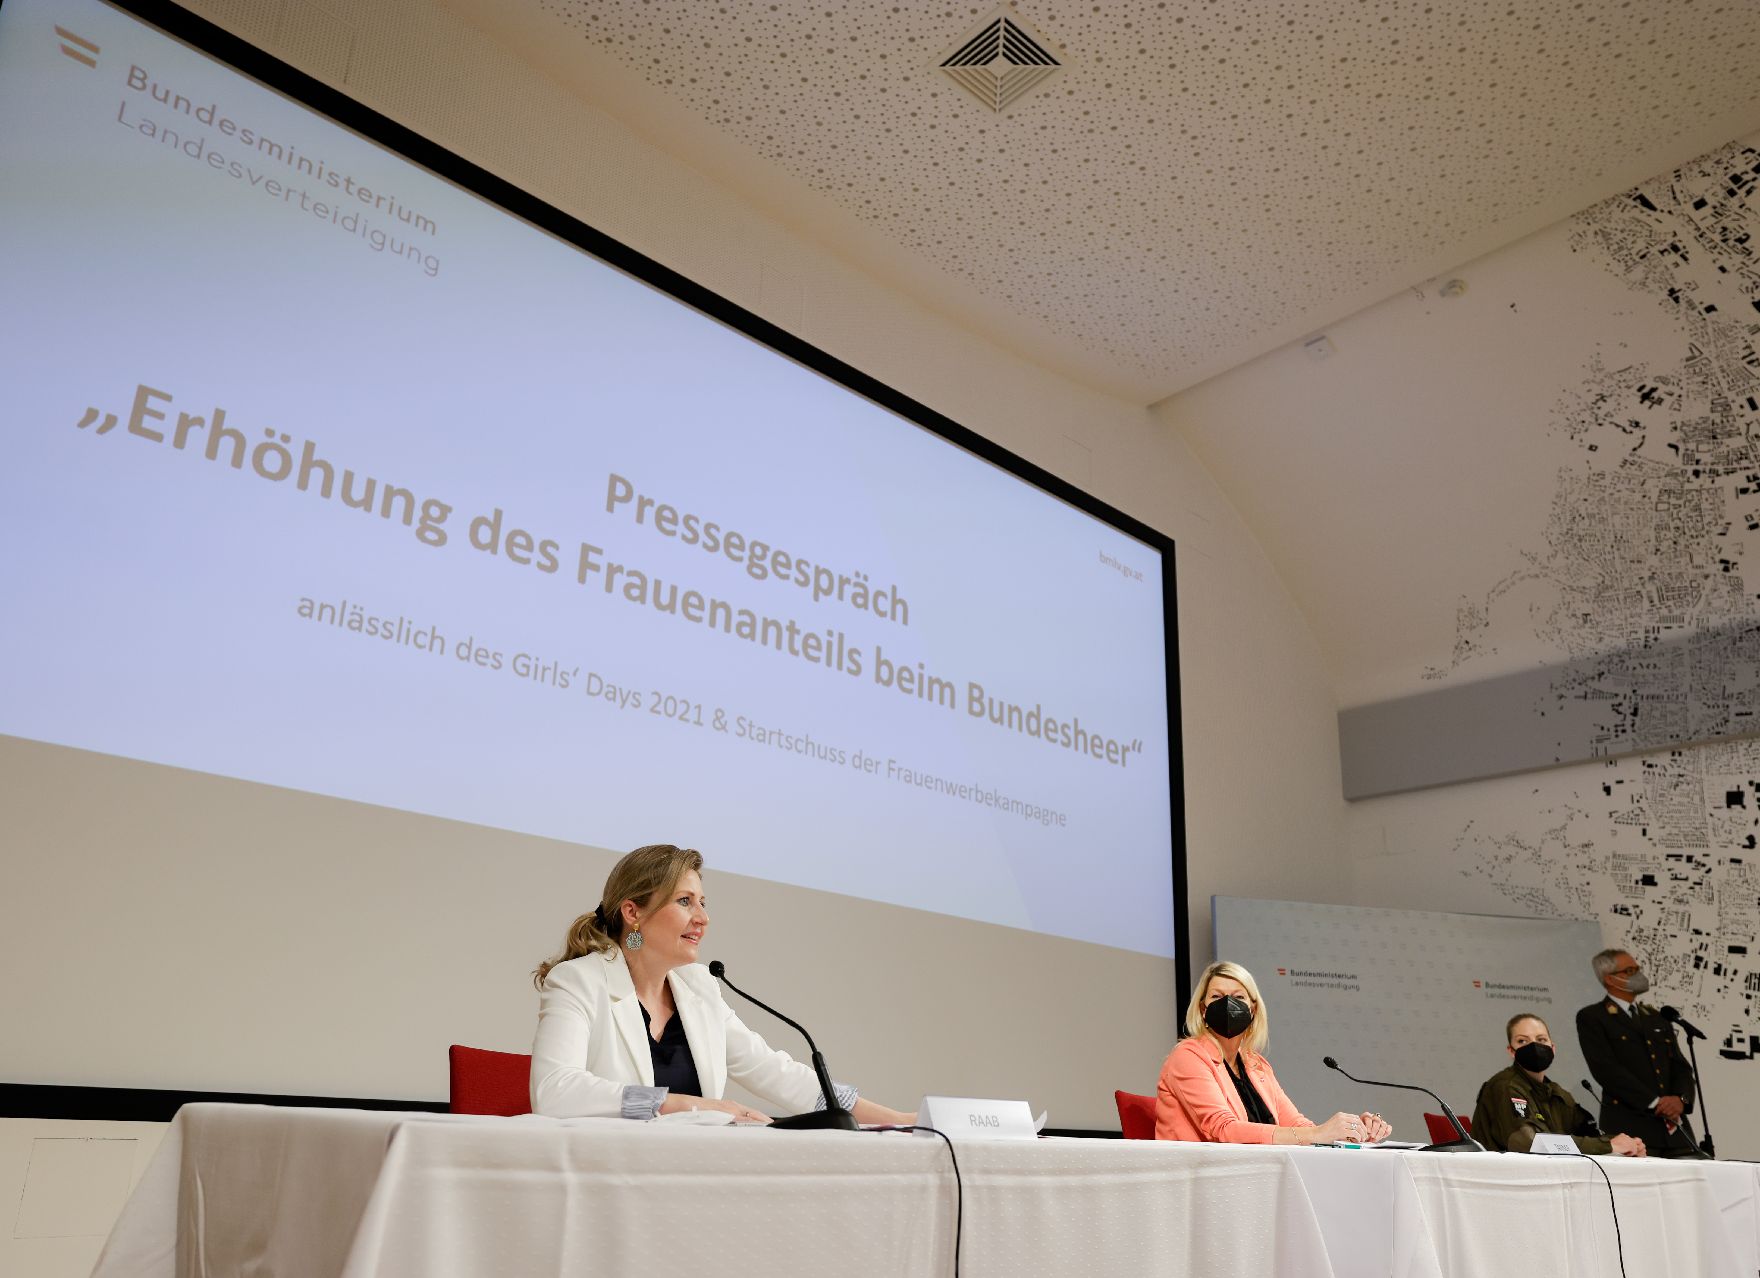 Am 22. April 2021 lud Bundesministerin Susanne Raab (l.) gemeinsam mit Bundesministerin Klaudia Tanner (r.) zu einem Pressegespräch zum Thema „Erhöhung des Frauenanteils beim Bundesheer“.